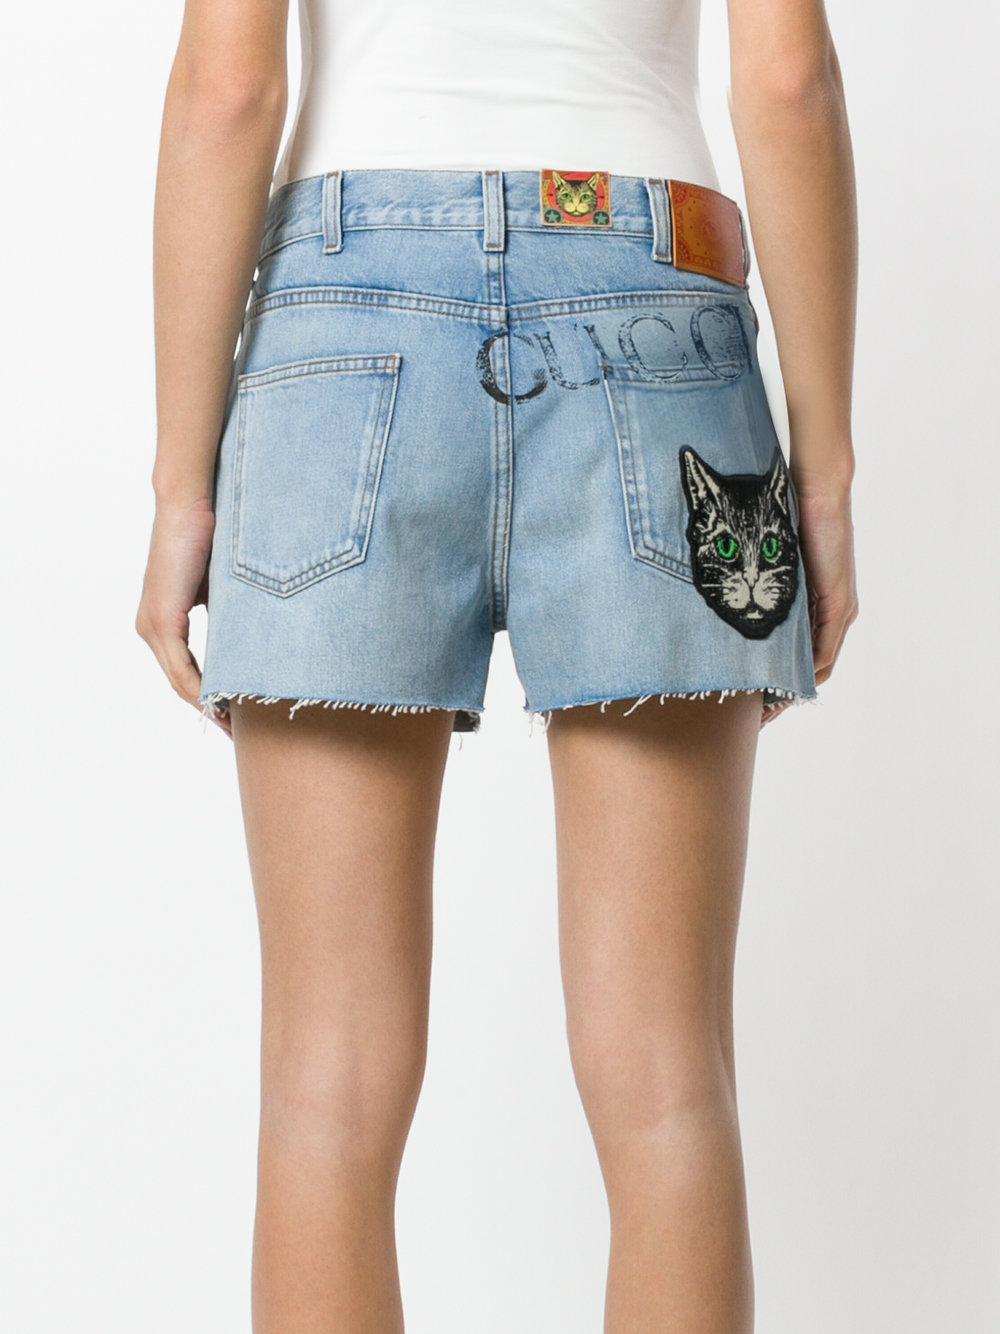 Gucci Denim Cat Print Shorts in Blue - Lyst